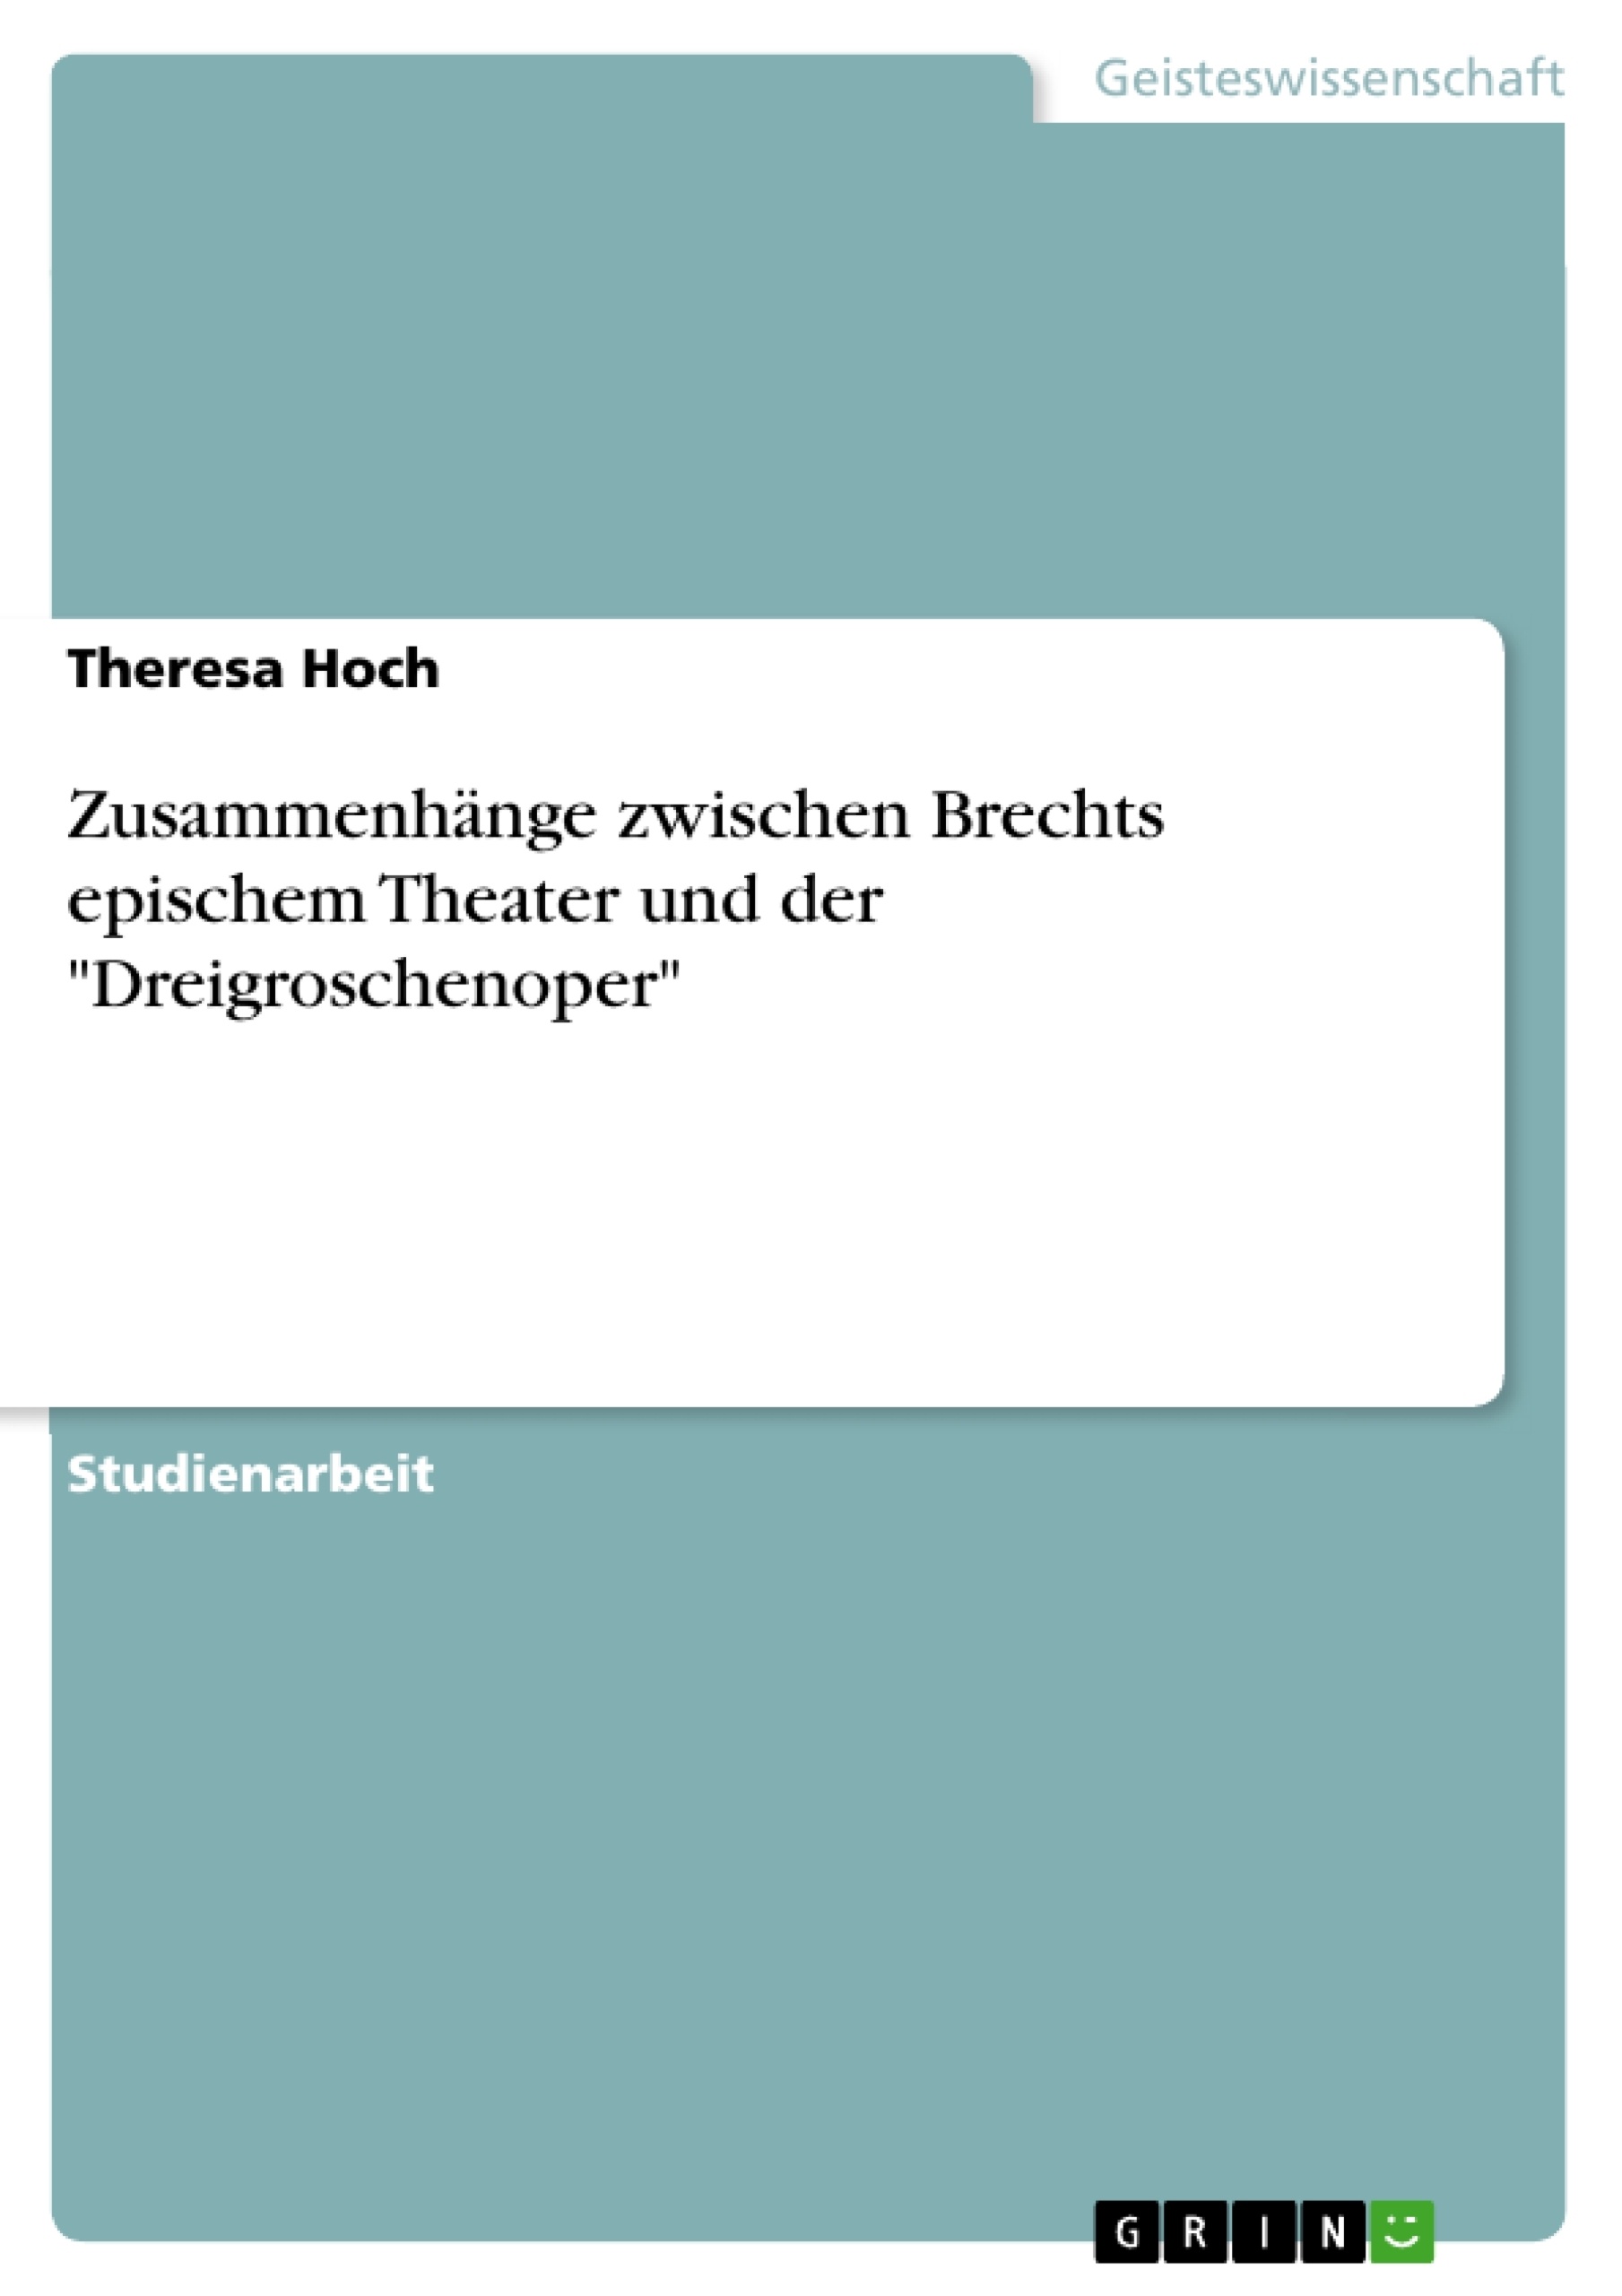 Titre: Zusammenhänge zwischen Brechts epischem Theater und der "Dreigroschenoper"